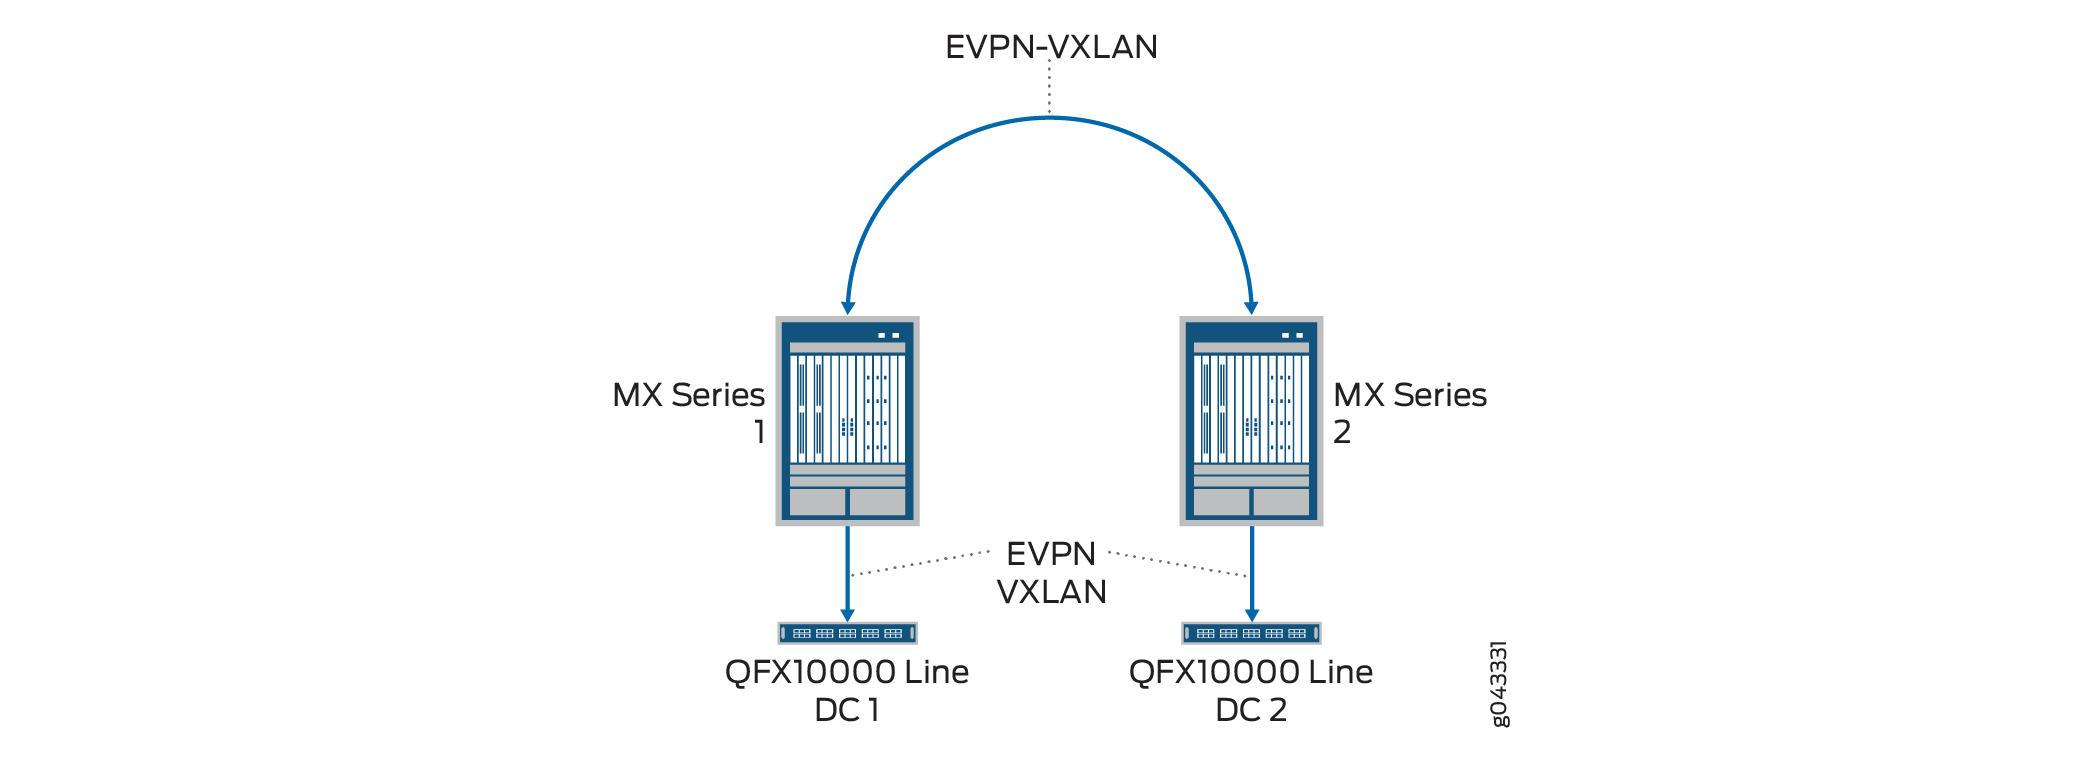 DCI Option: EVPN-VXLAN over the Internet